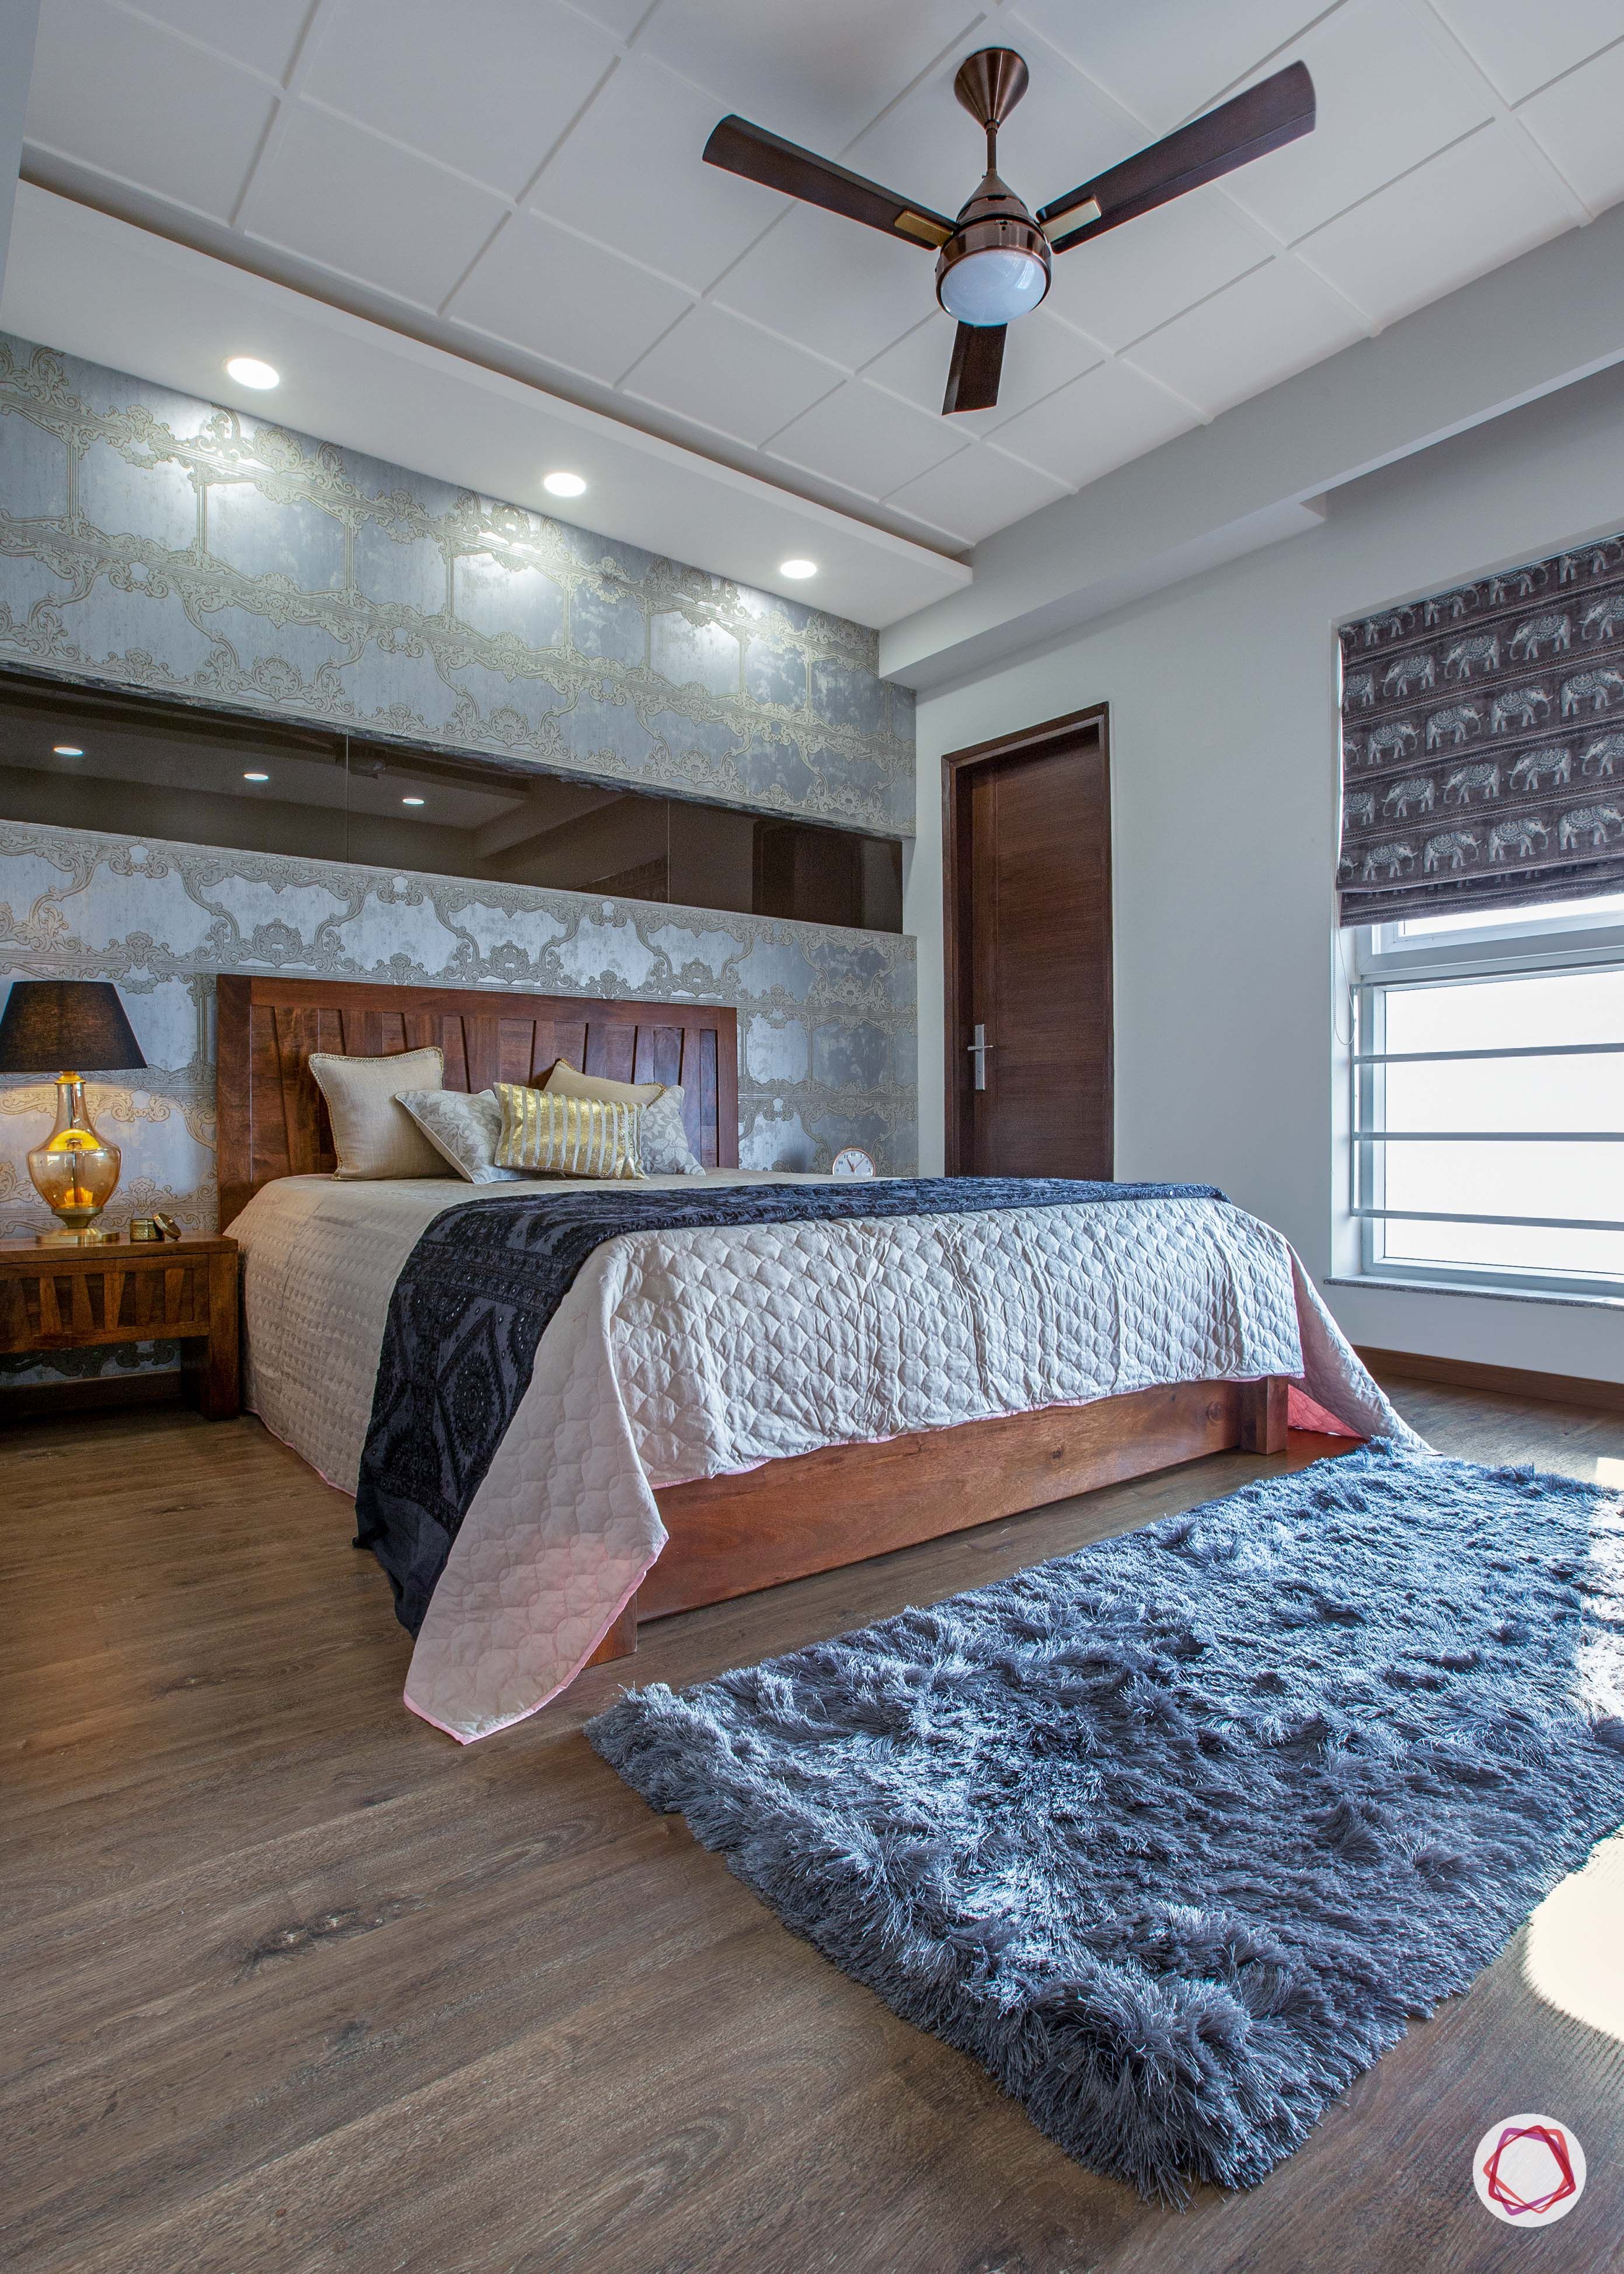 3 bhk flats in noida guest bedroom